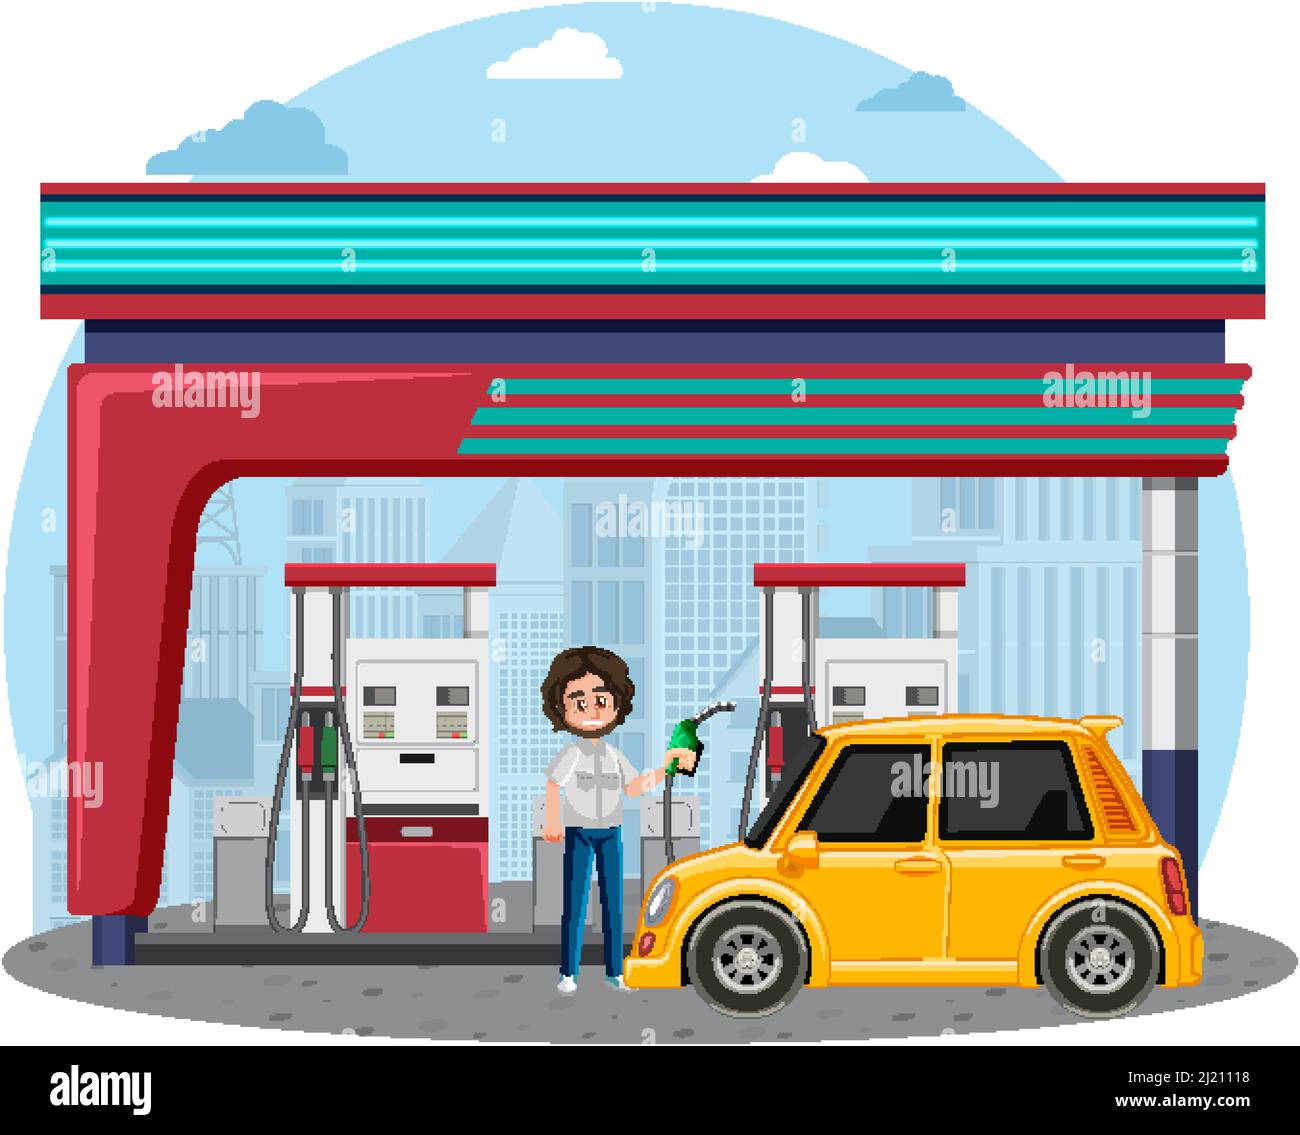 Top 97+ imagen dibujos de gasolineras